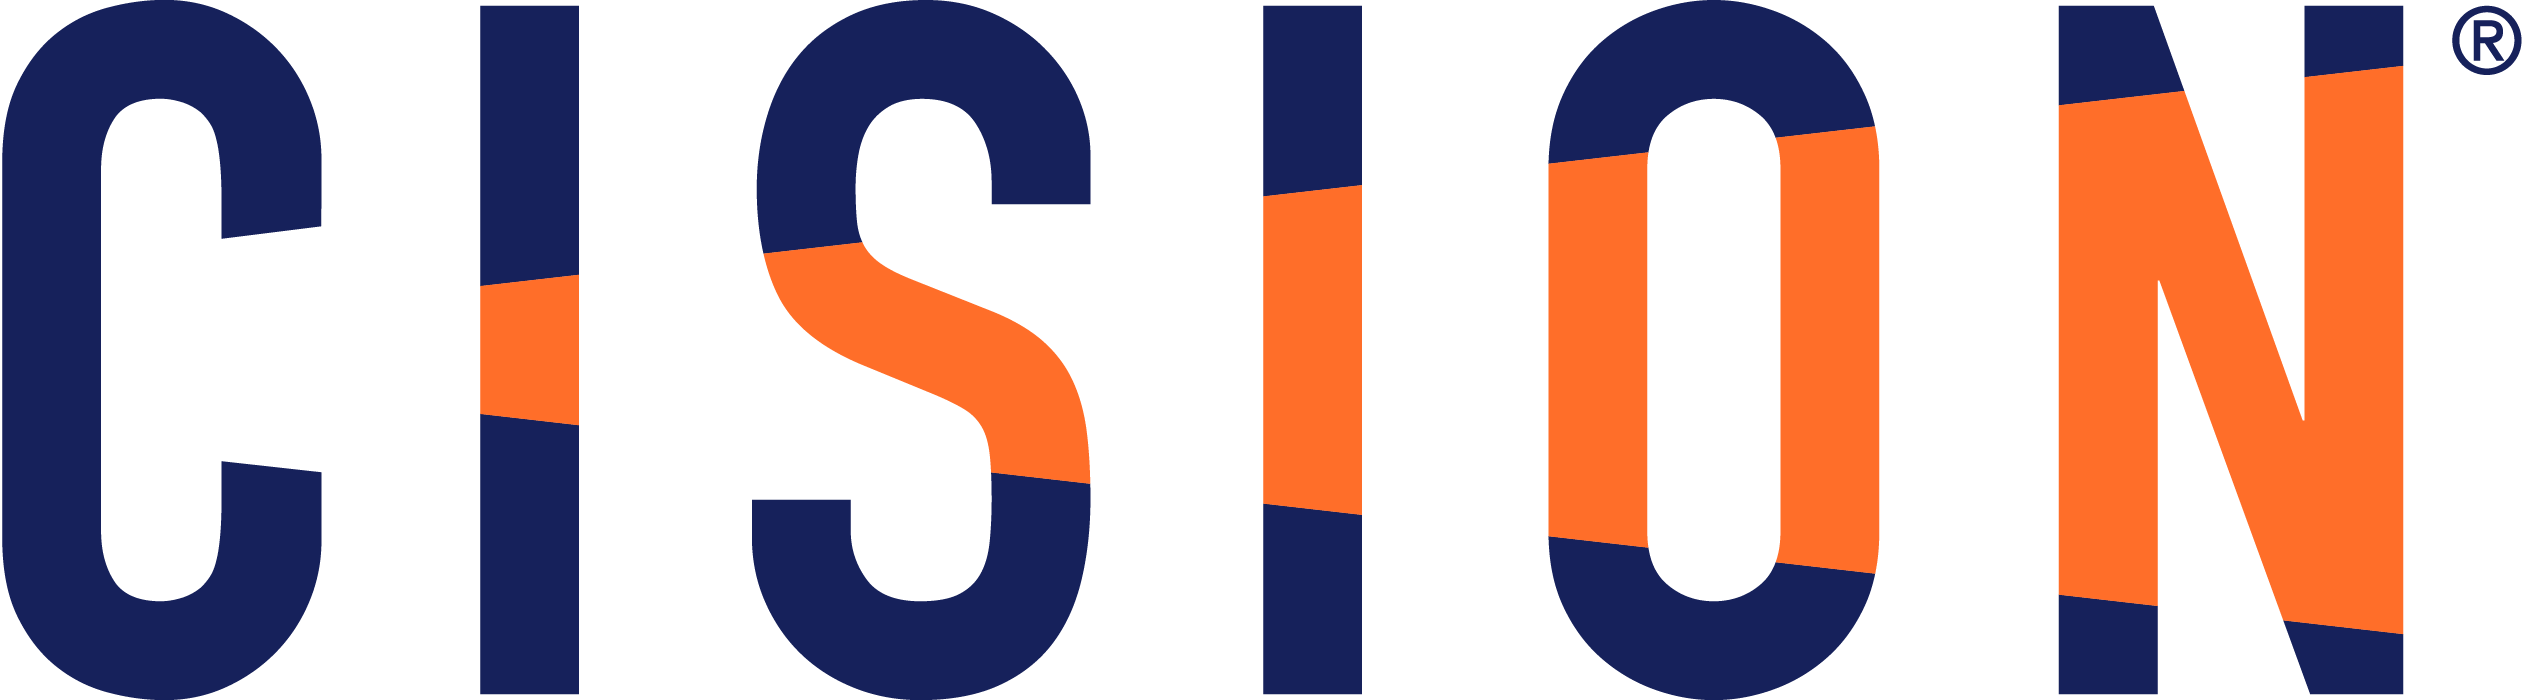 2023-Cision-Logo-Navy-Orange.png